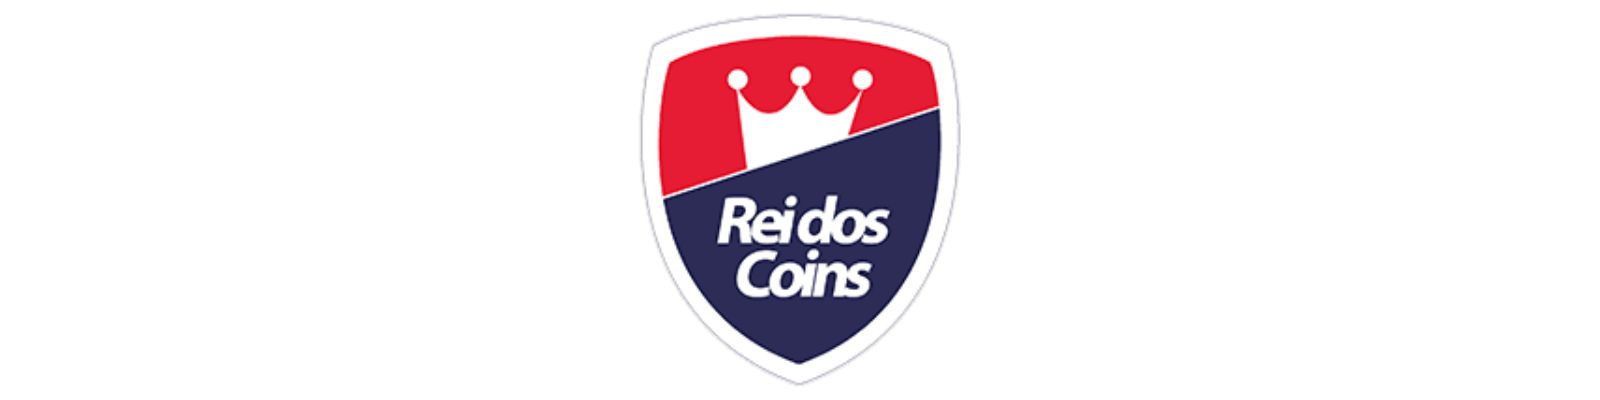 Roblox - Rei dos Coins